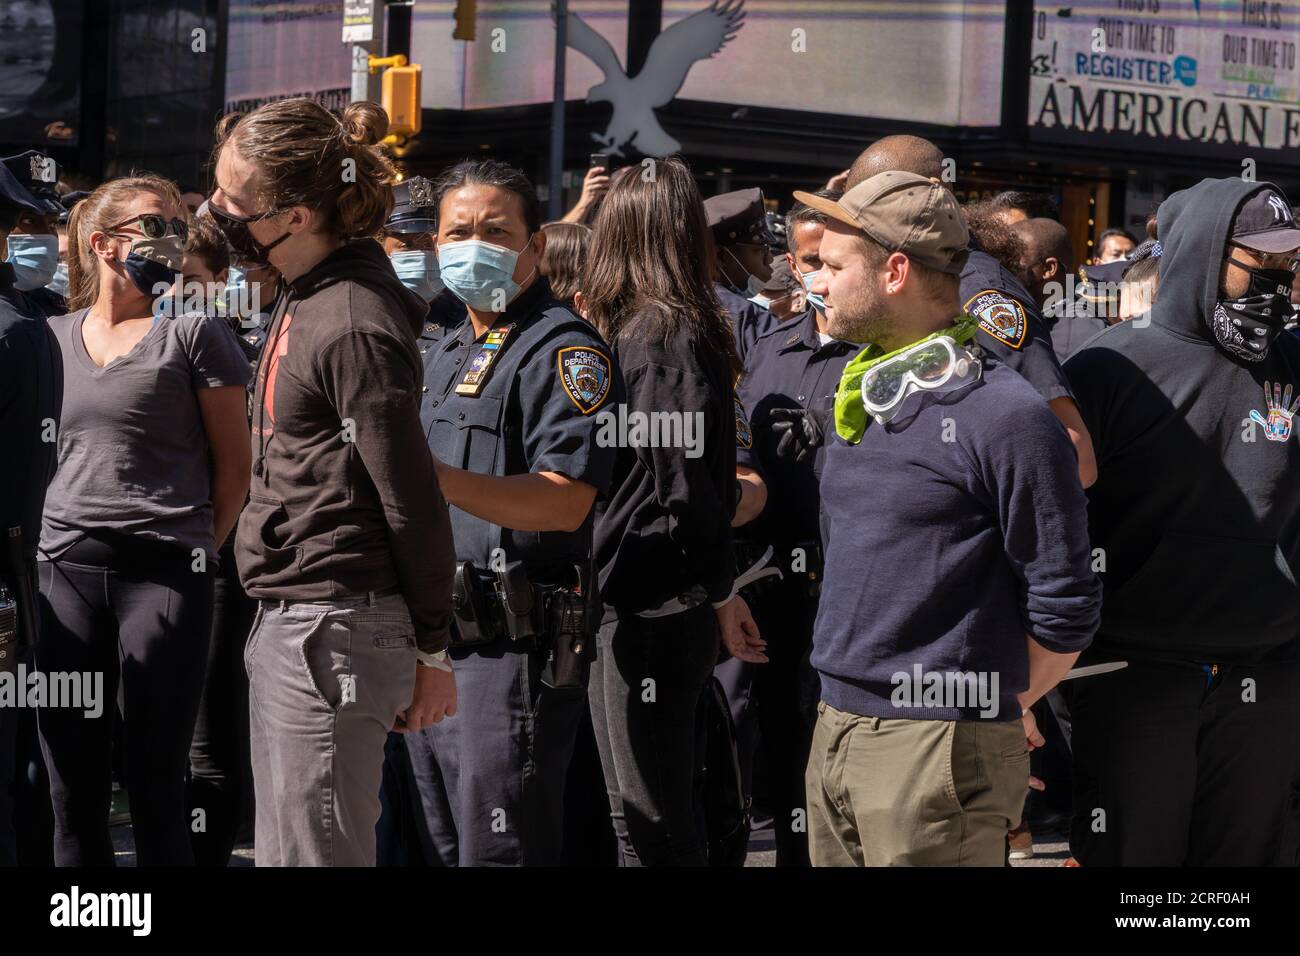 NEW YORK, NY - 19. SEPTEMBER 2020: Die Polizei verhaftete 86 Personen bei einem Protest gegen die Immigration and Customs Enforcement Agency (ICE) am Times Square. Stockfoto